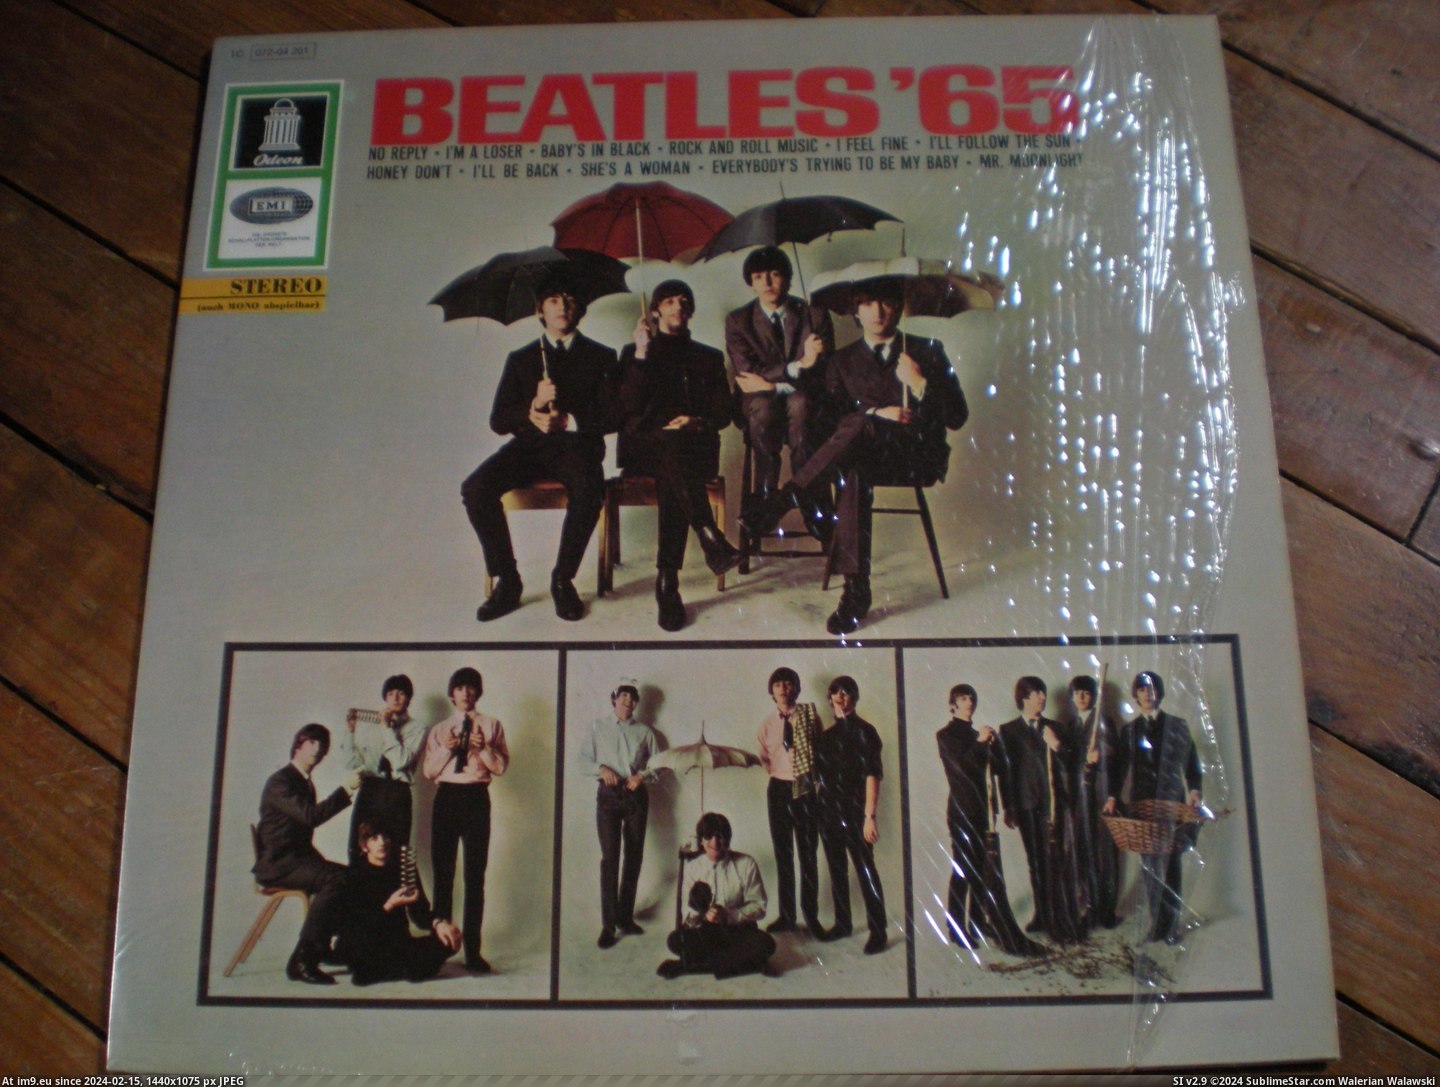  #Beatles  Beatles 65 5 Pic. (Изображение из альбом new 1))